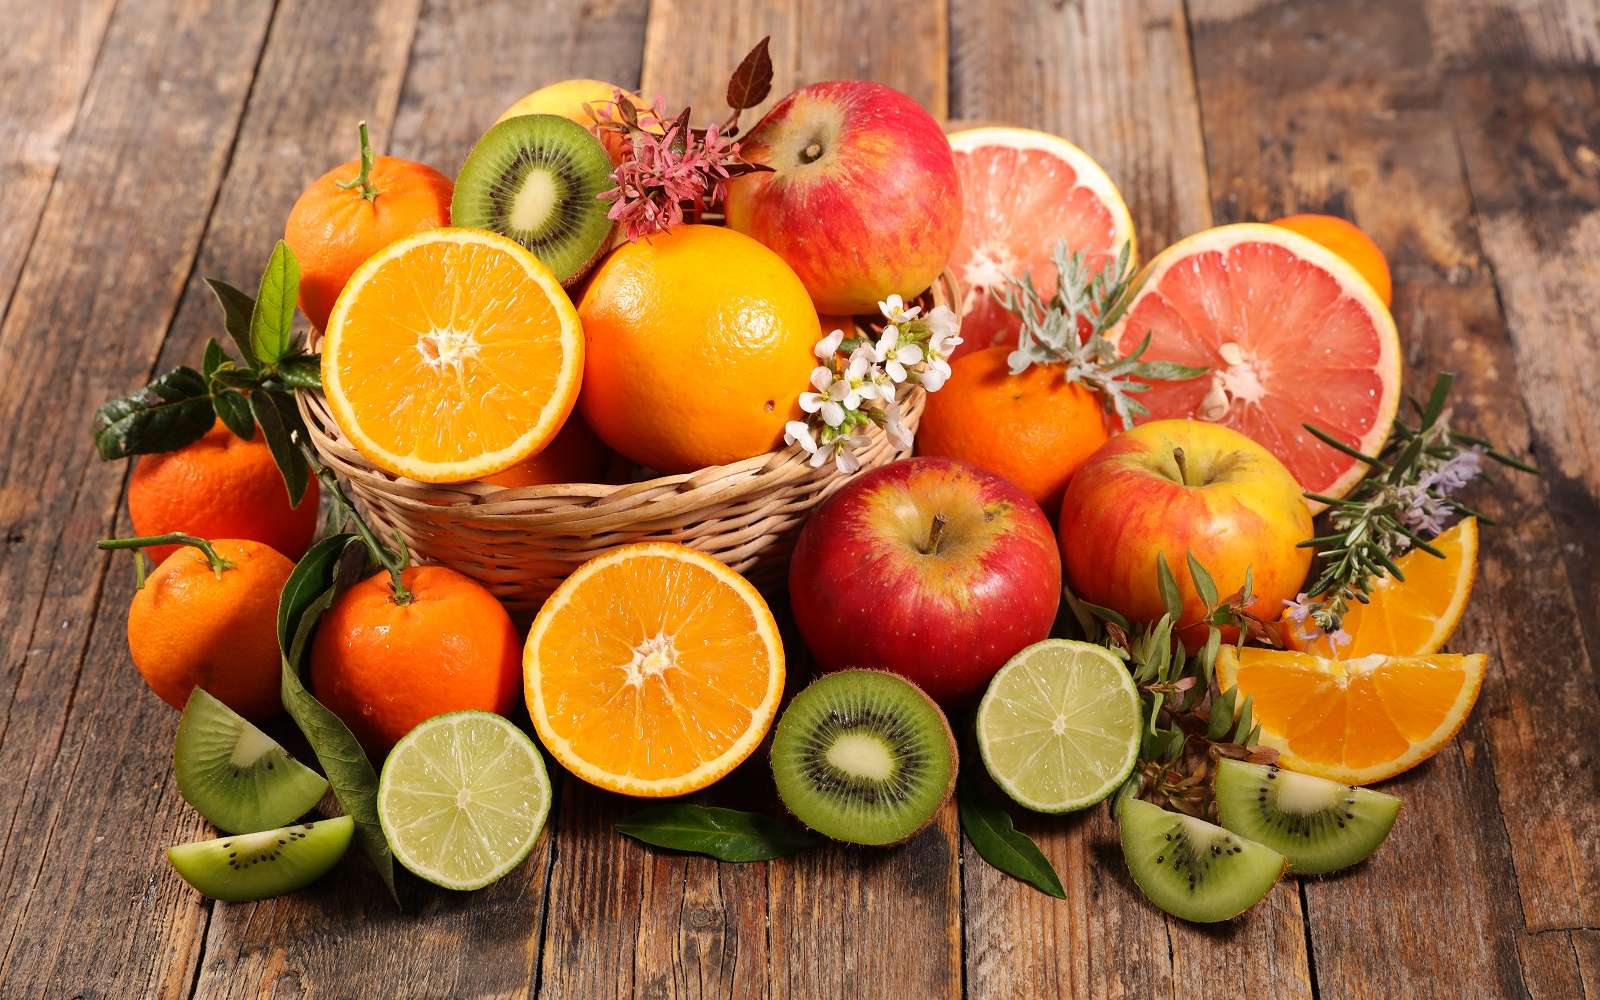 Magnifique panier de fruits d'hiver colorés et vitaminés. © M.studio, Adobe Stock